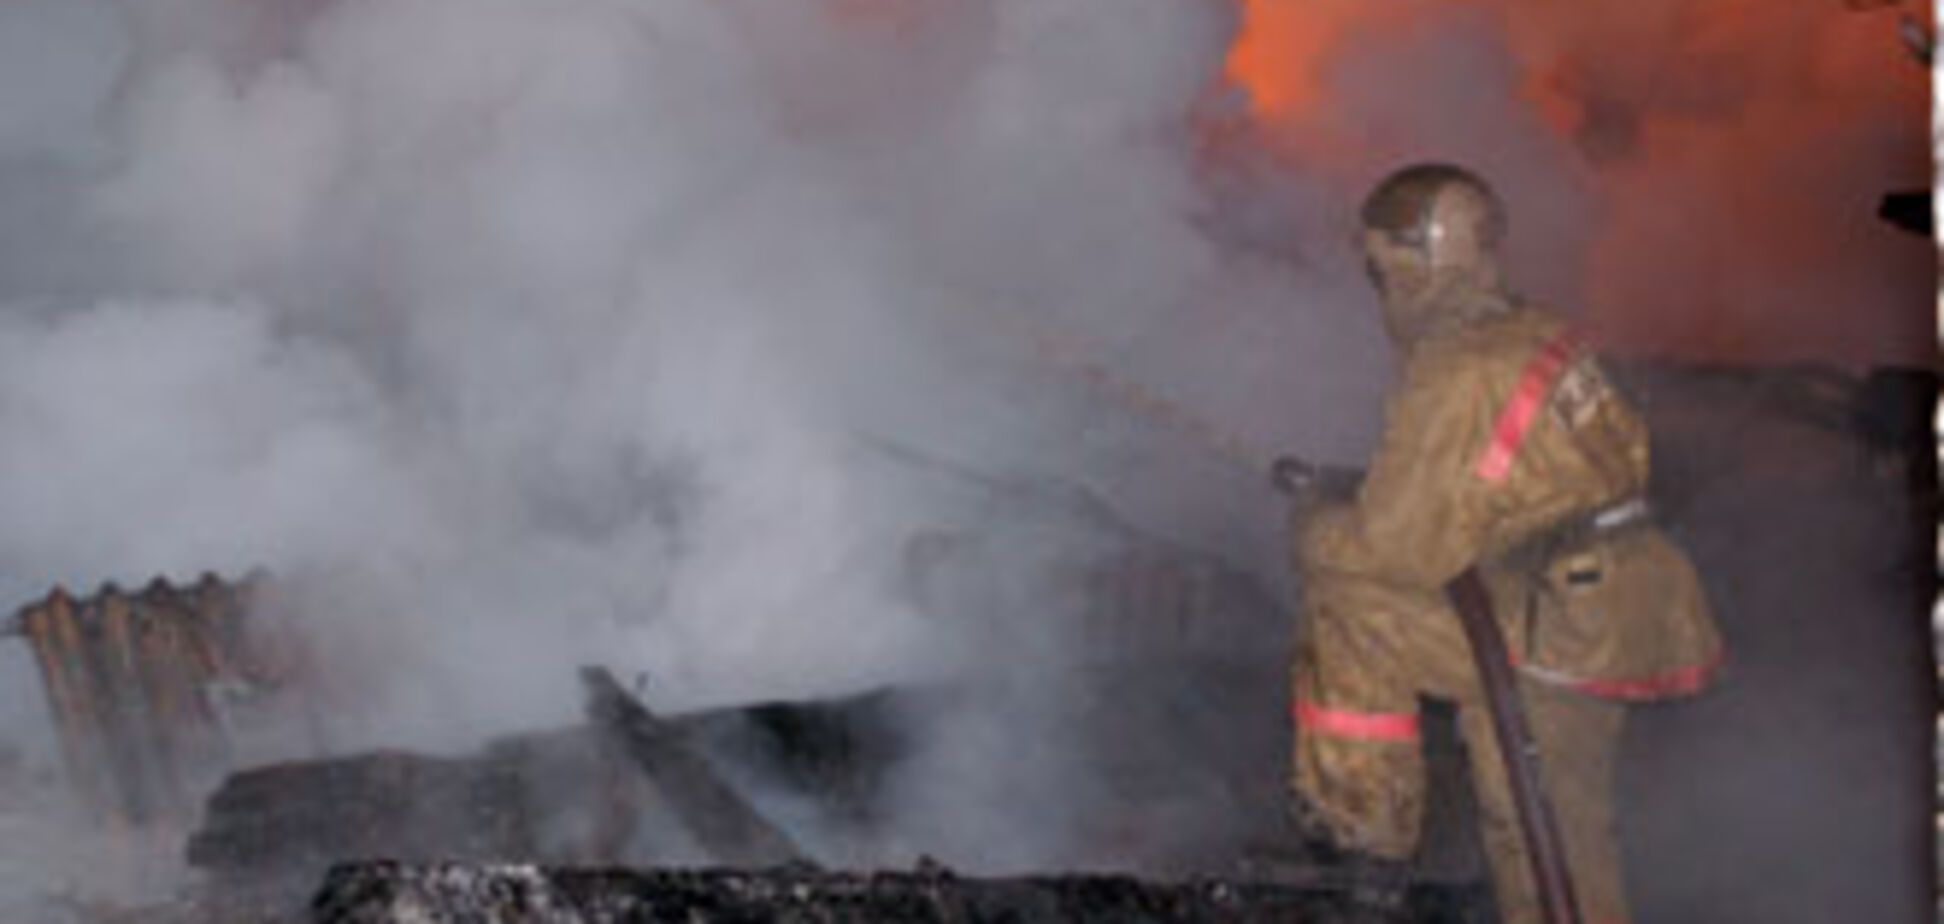 В польском приюте сгорел 21 человек, в стране объявлен траур